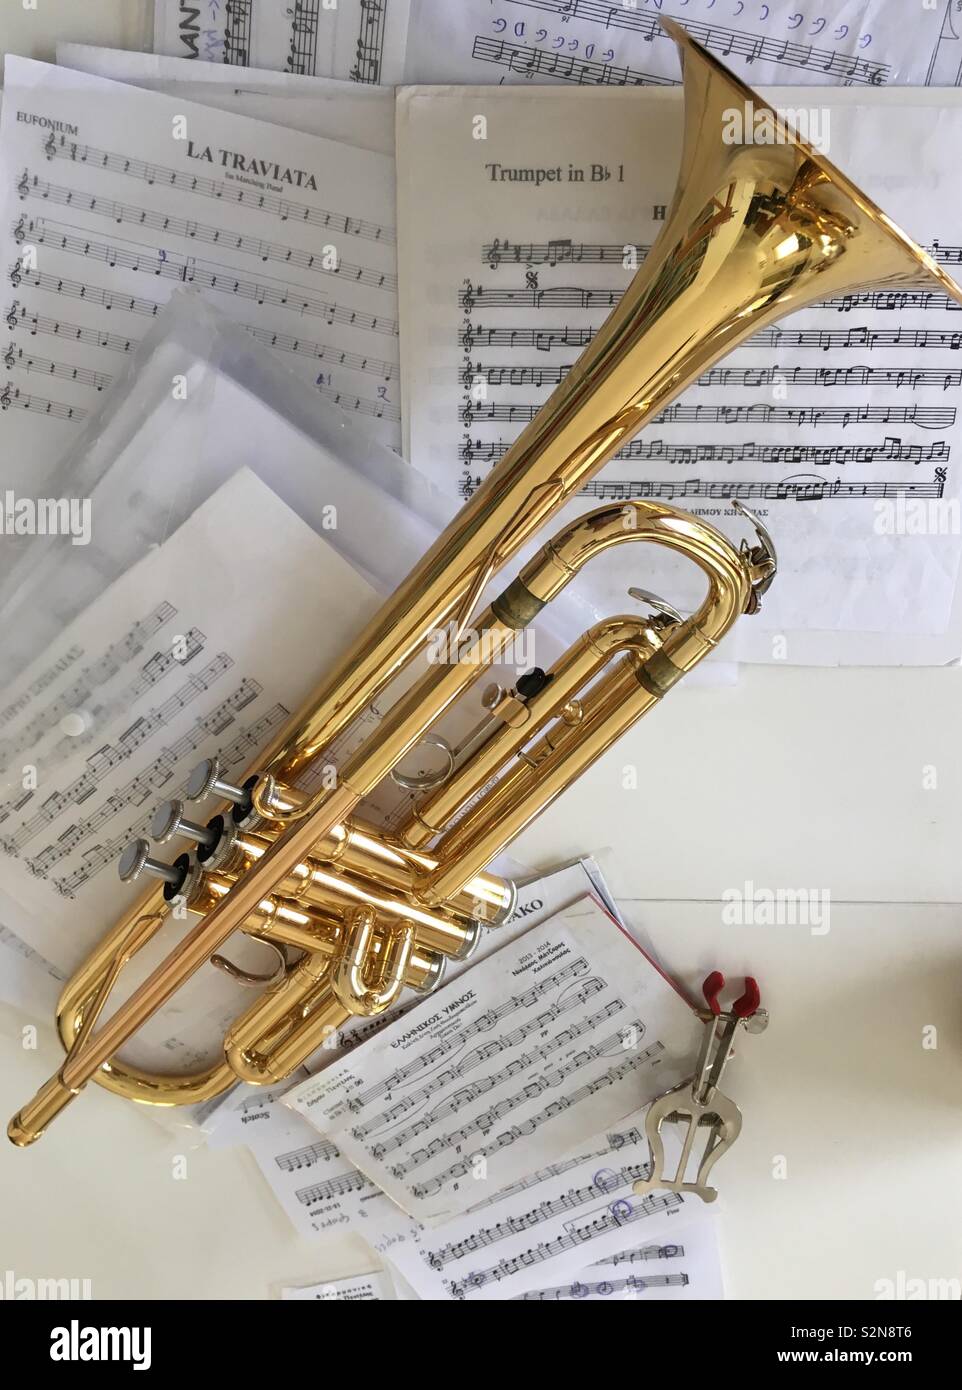 Nouvelle trompette flambant neuve de garçon de 12 ans posée sur une table au milieu de feuilles de musique trompette et le détenteur de musique, prêt pour une leçon de trompette imminente. Banque D'Images